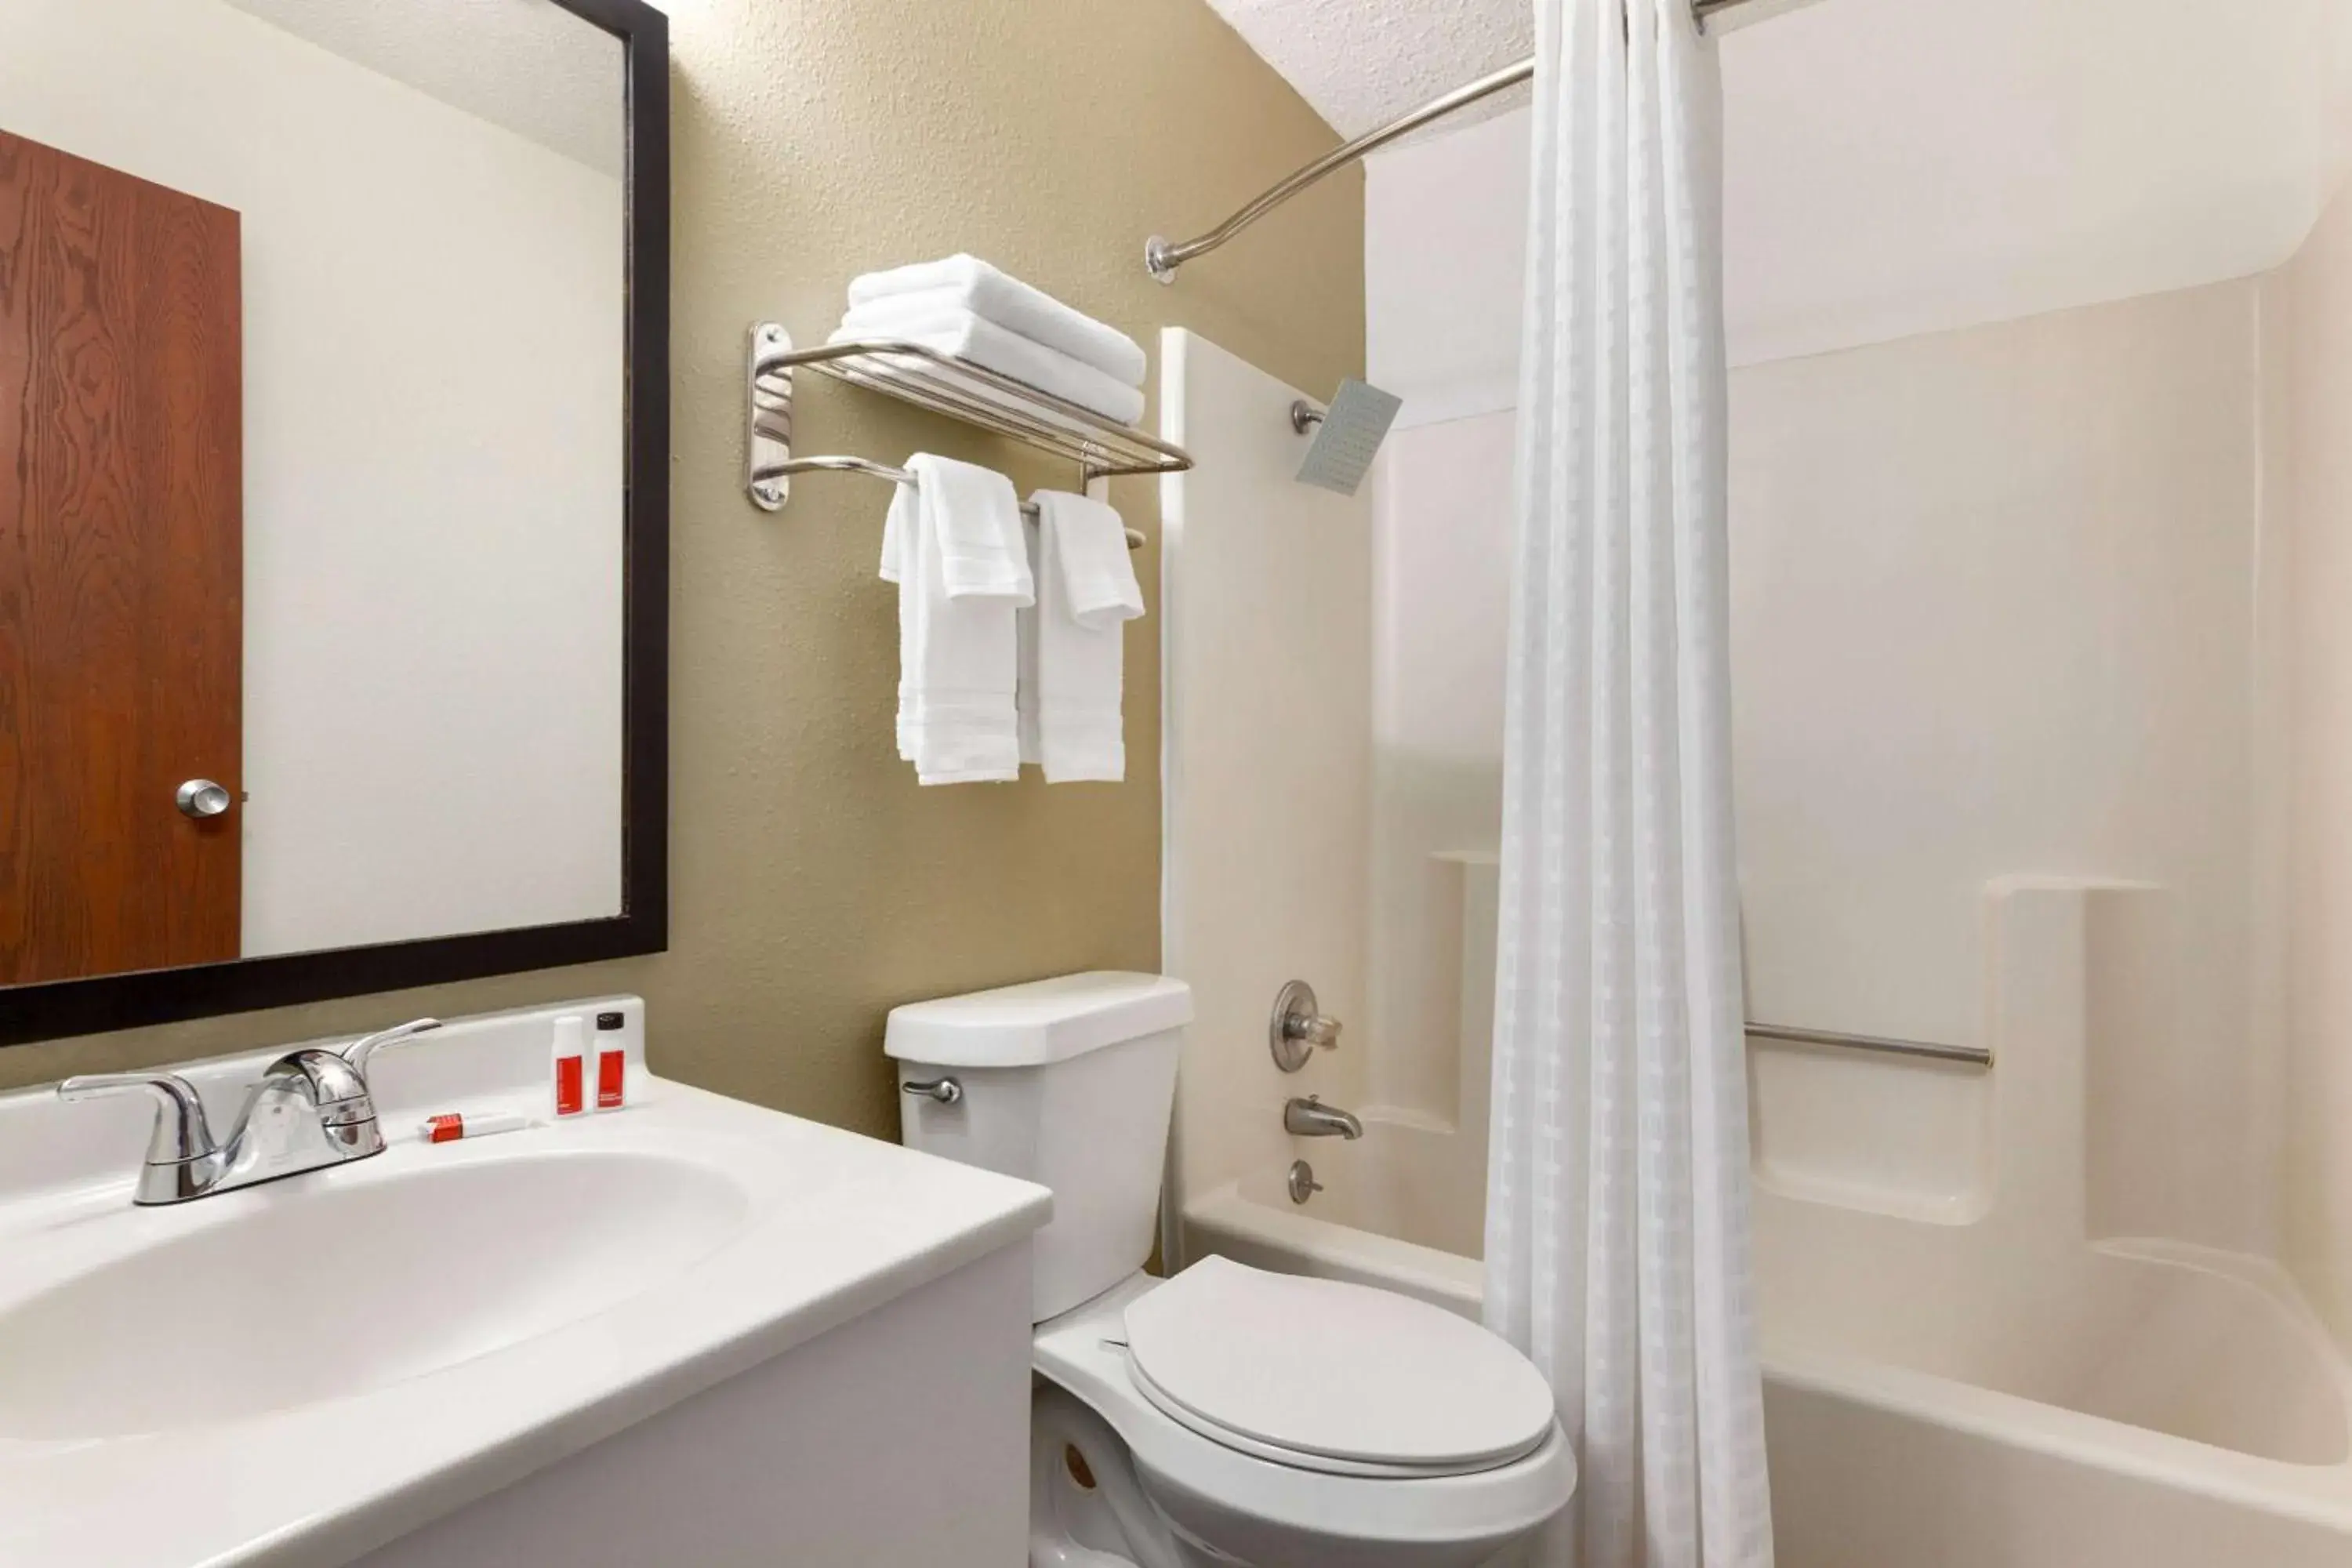 TV and multimedia, Bathroom in Baymont by Wyndham Hutchinson